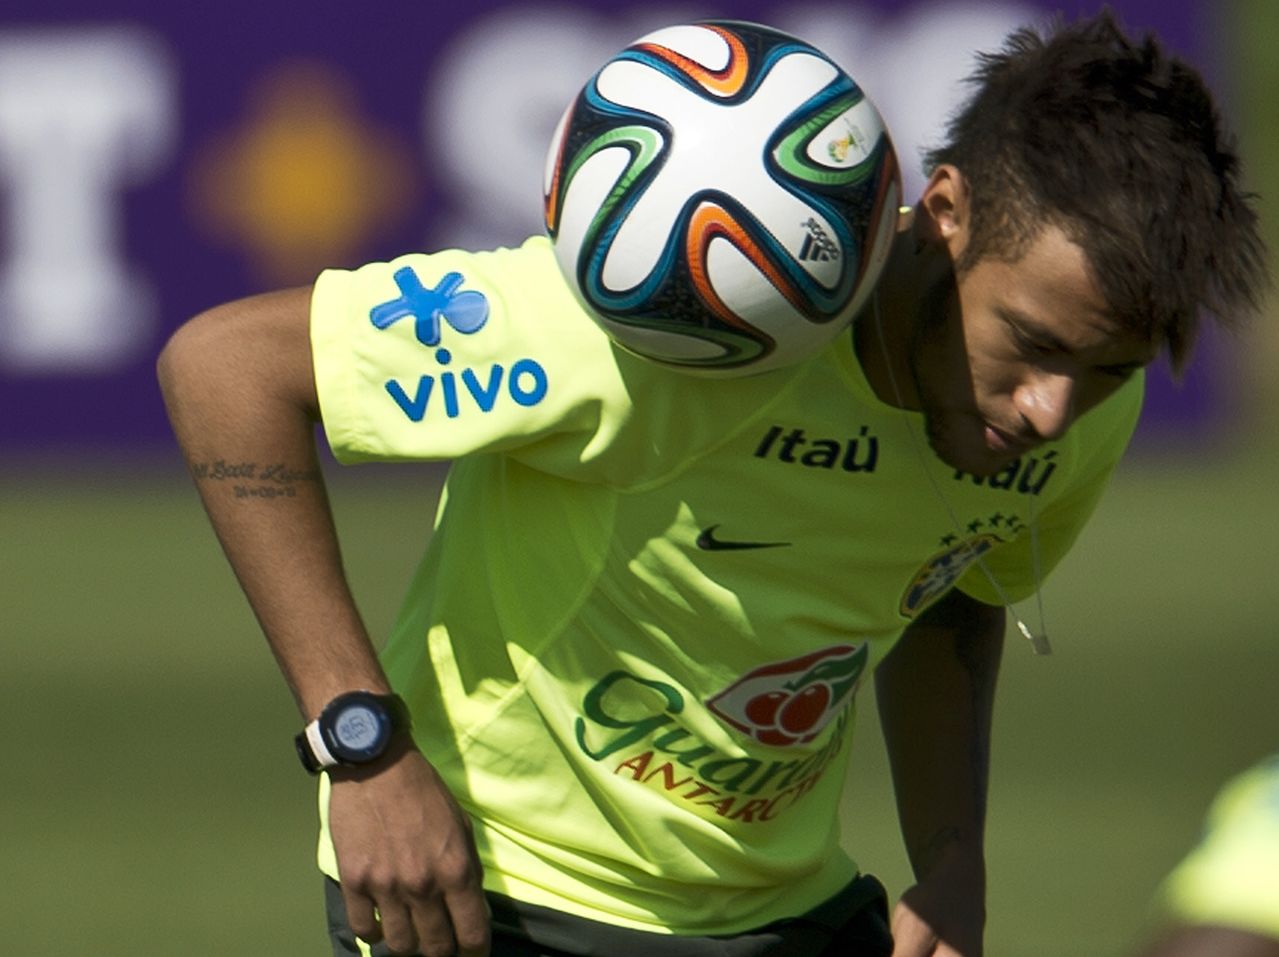 صور لاعبي ونجوم مونديال كأس العالم 2014 بالبرازيل , صور اللاعبين المشاركين في كأس العالم 2014